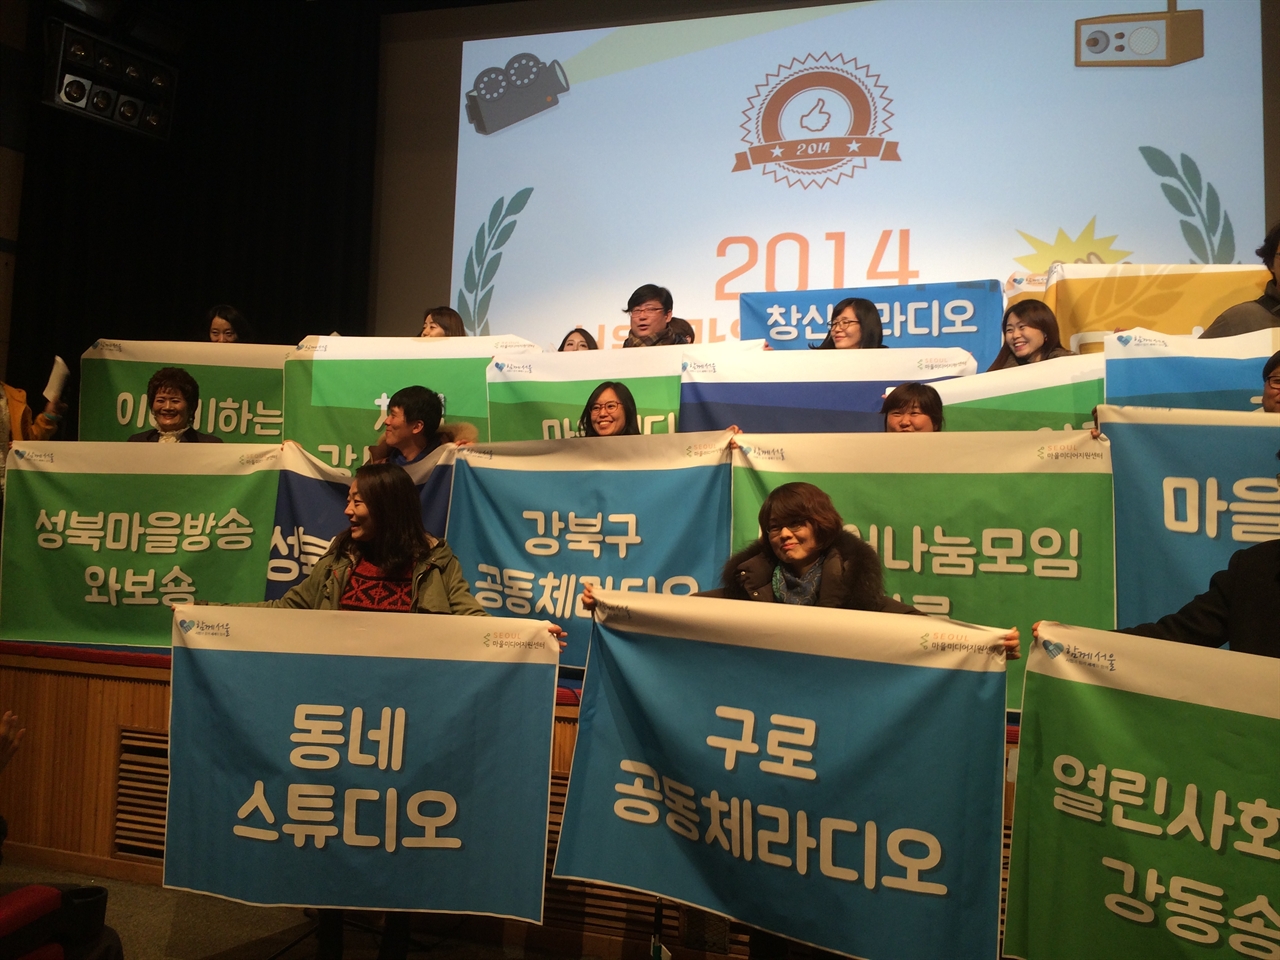 2014 서울마을미디어축제에 참여한 마을 미디어들

